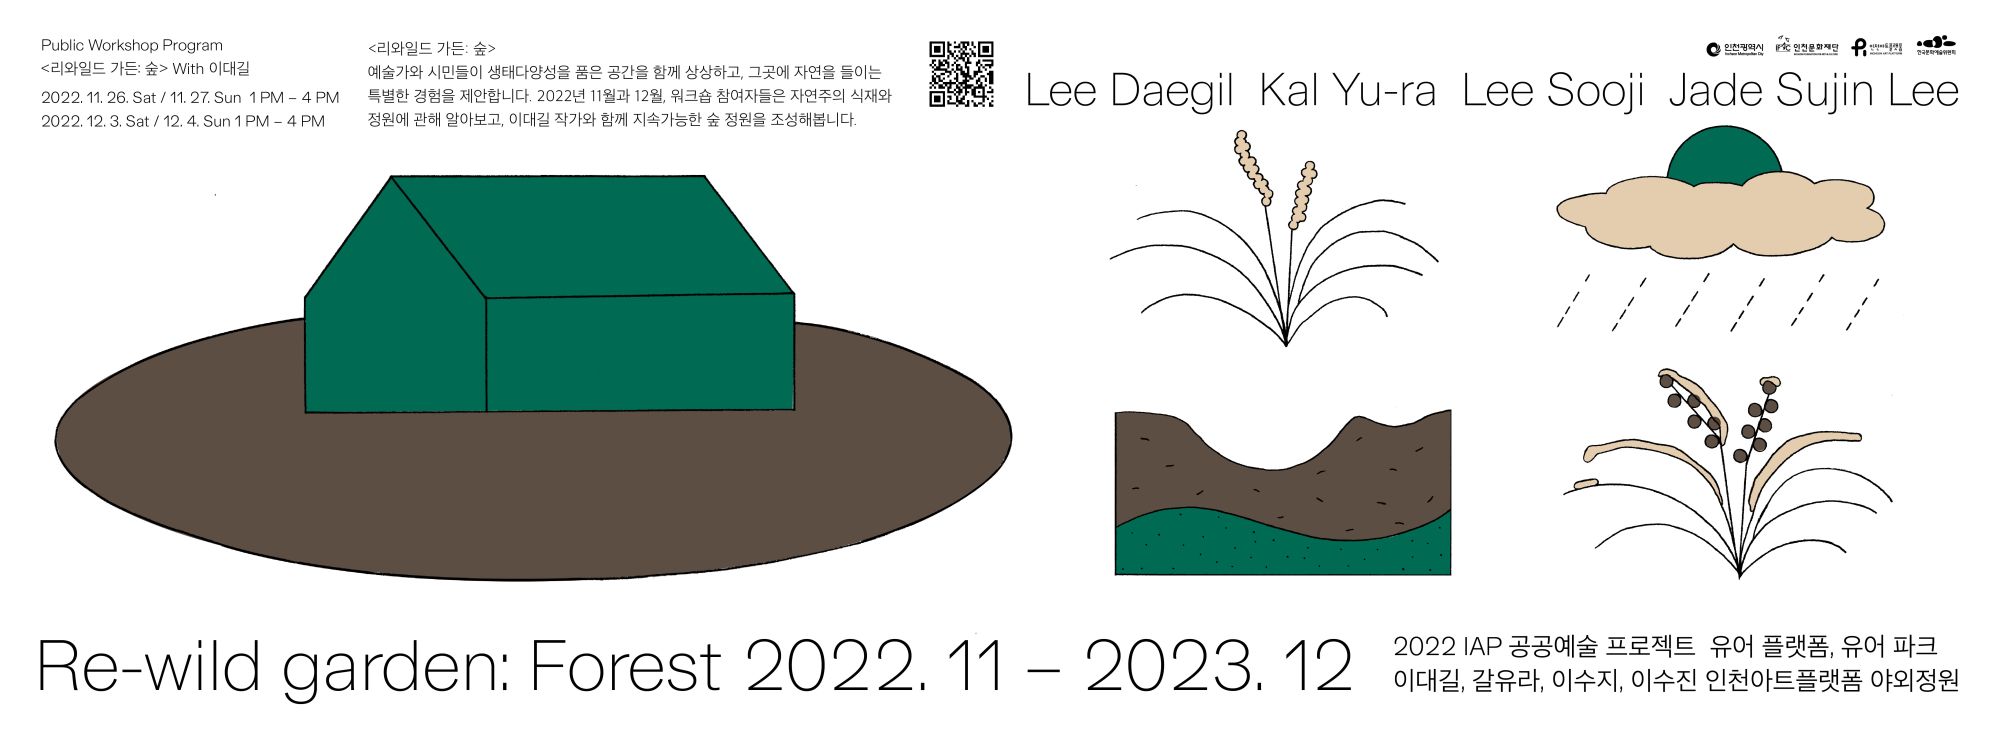 [ 행사 ] [2022 IAP 공공예술사업] 《유어 플랫폼, 유어 파크 / Re-wild garden: Forest》